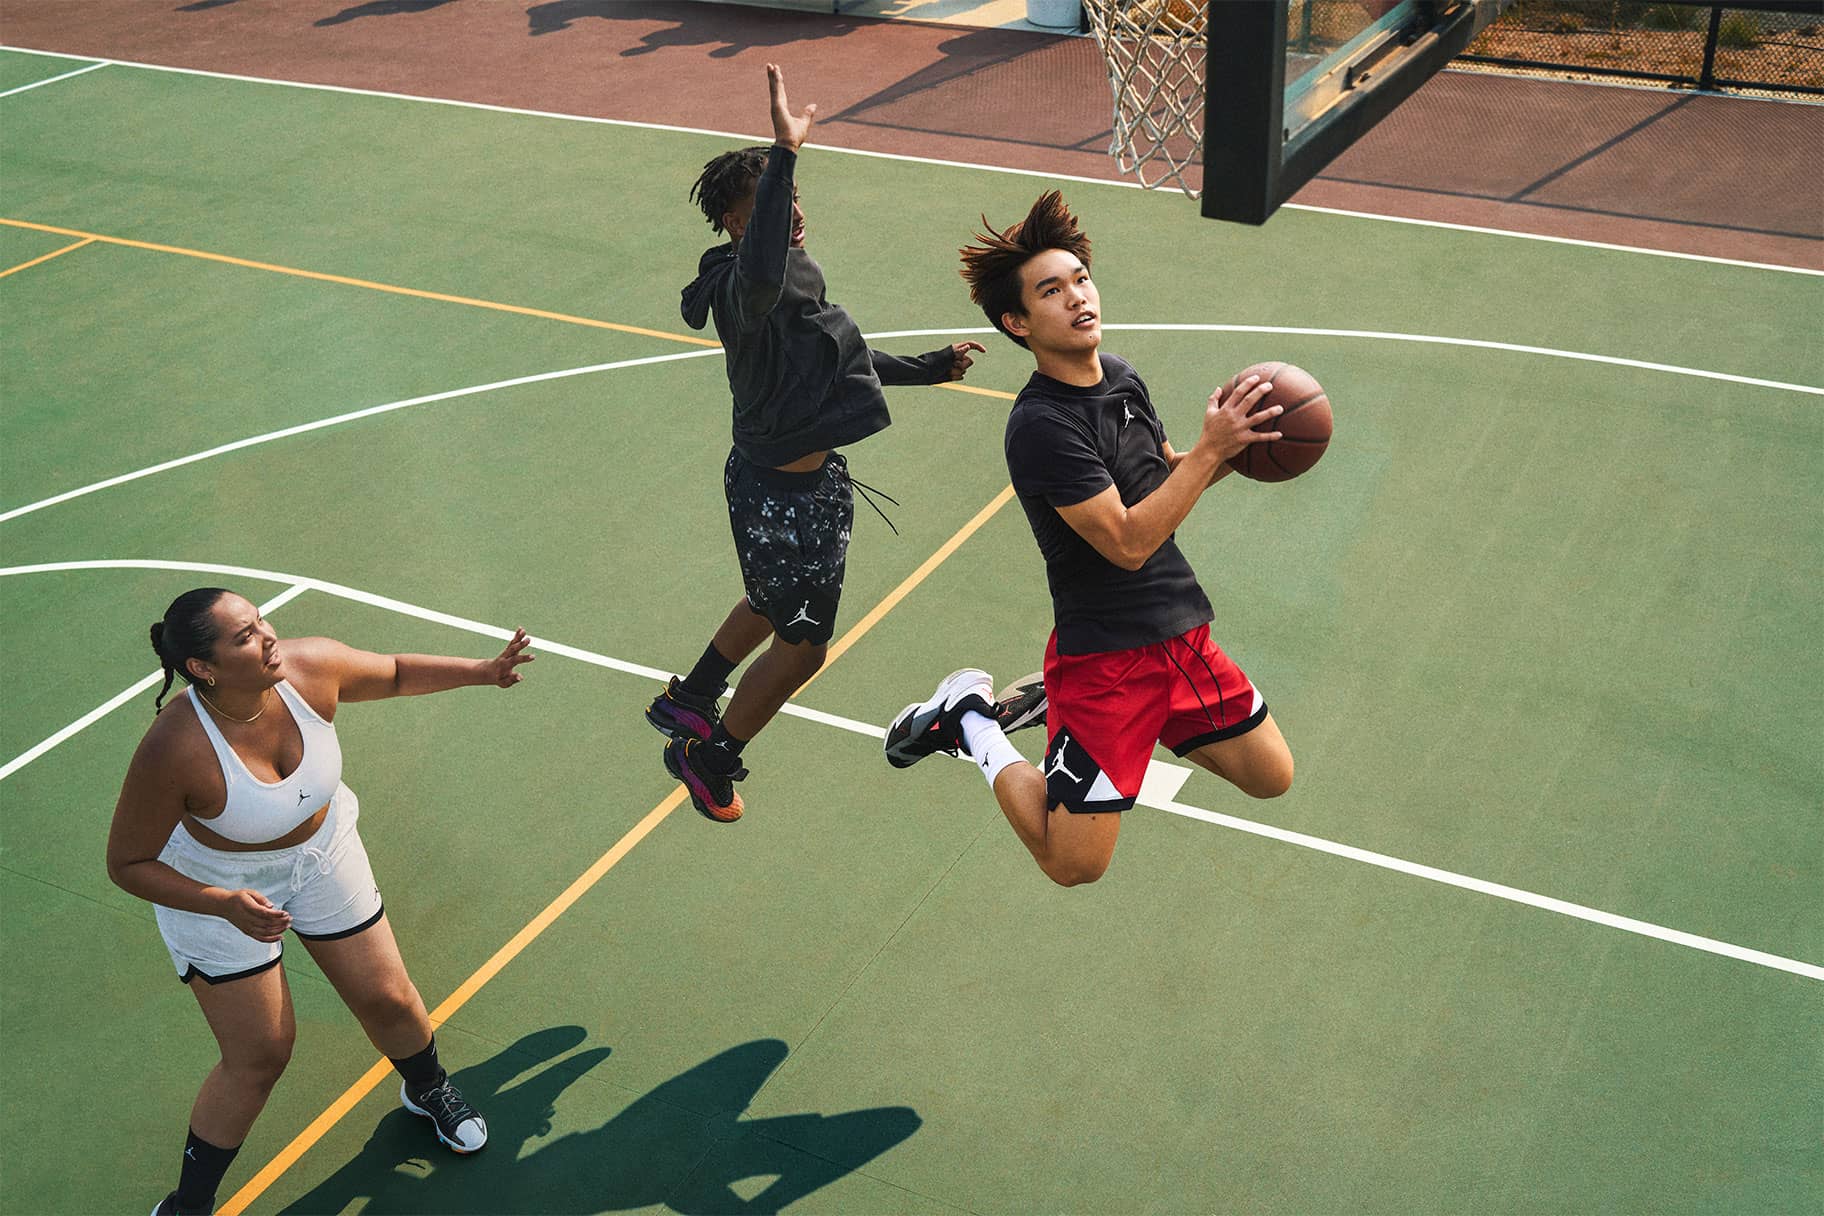 Cinc avantatges de jugar a bàsquet, segons els experts